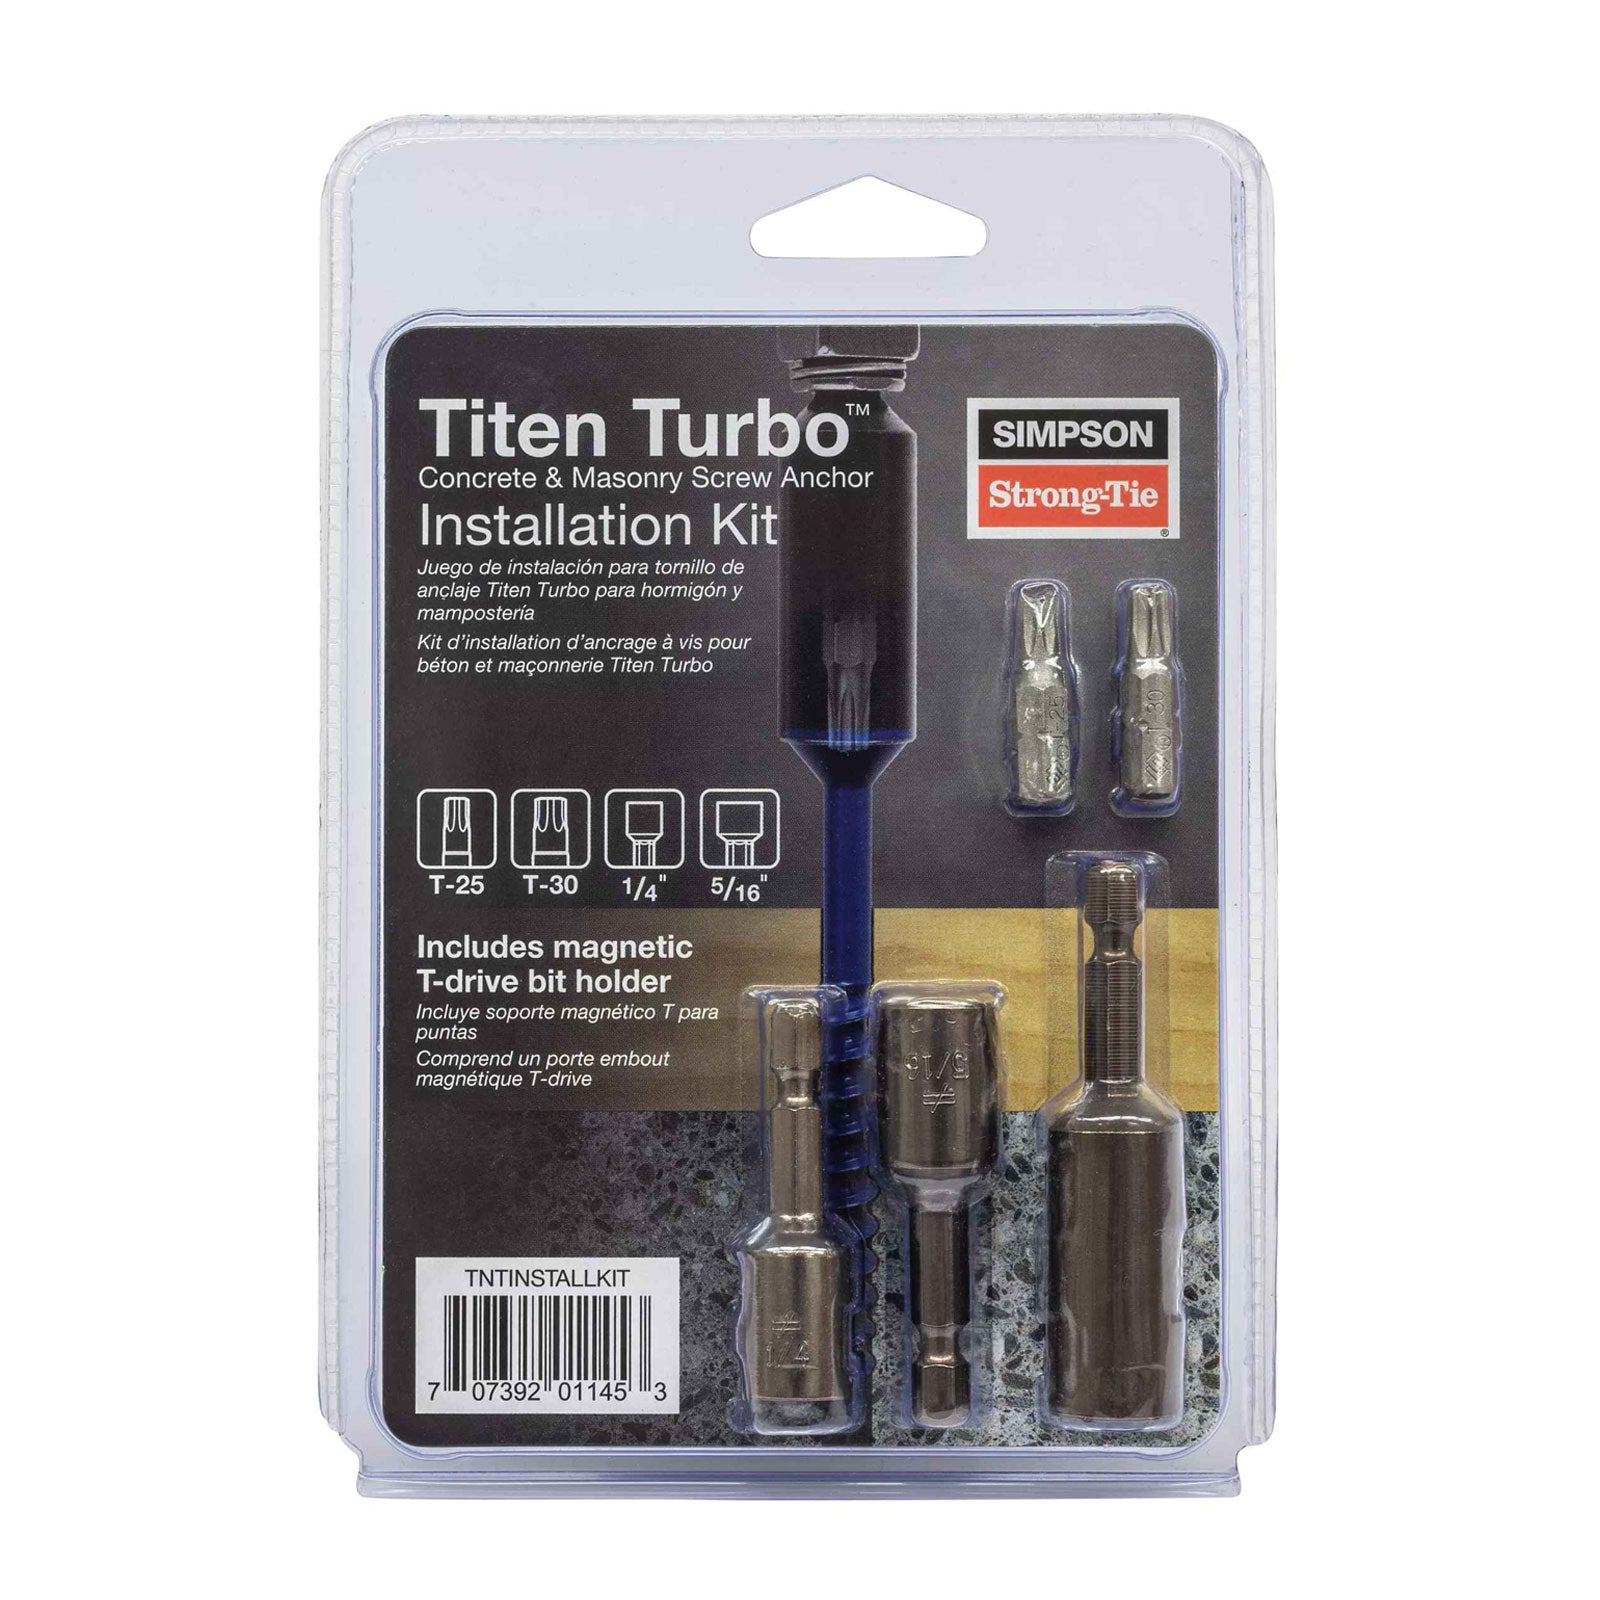 Simpson Strong-Tie TNTINSTALLKIT Titen Turbo Installation Kit